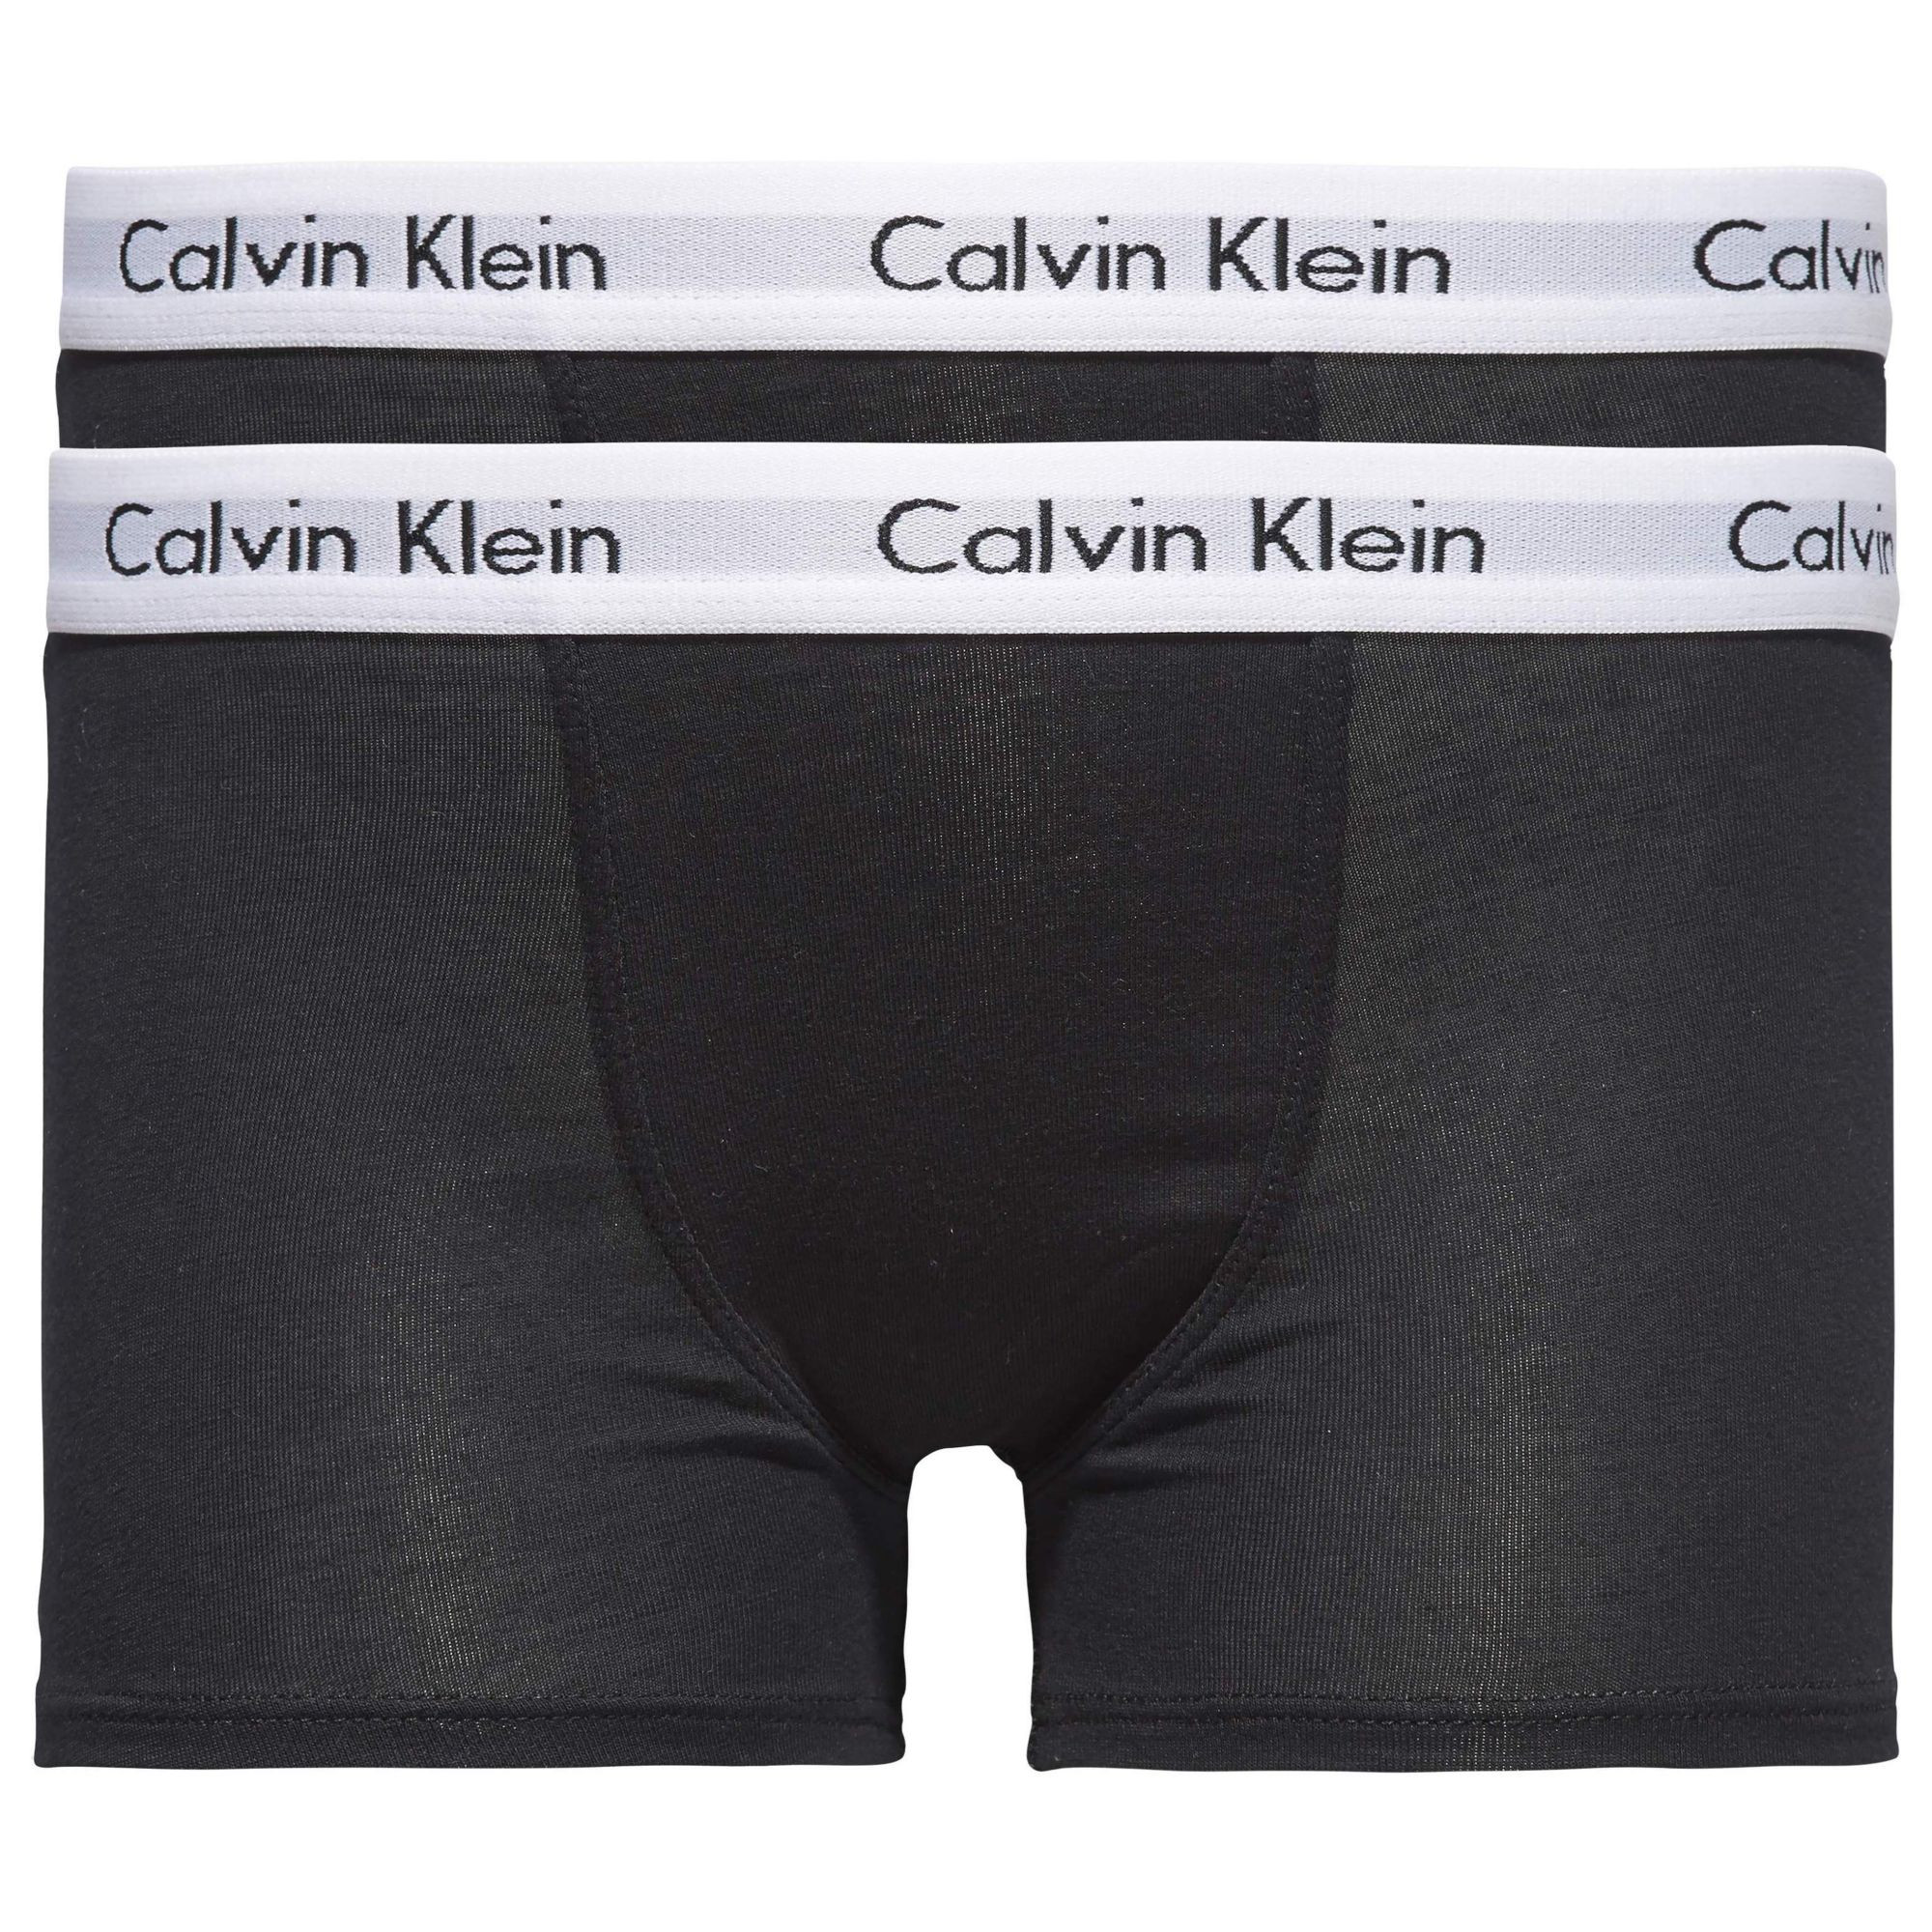 Chlapecké spodní prádlo 2 PACK TRUNK B70B792000001 - Calvin Klein 10-12